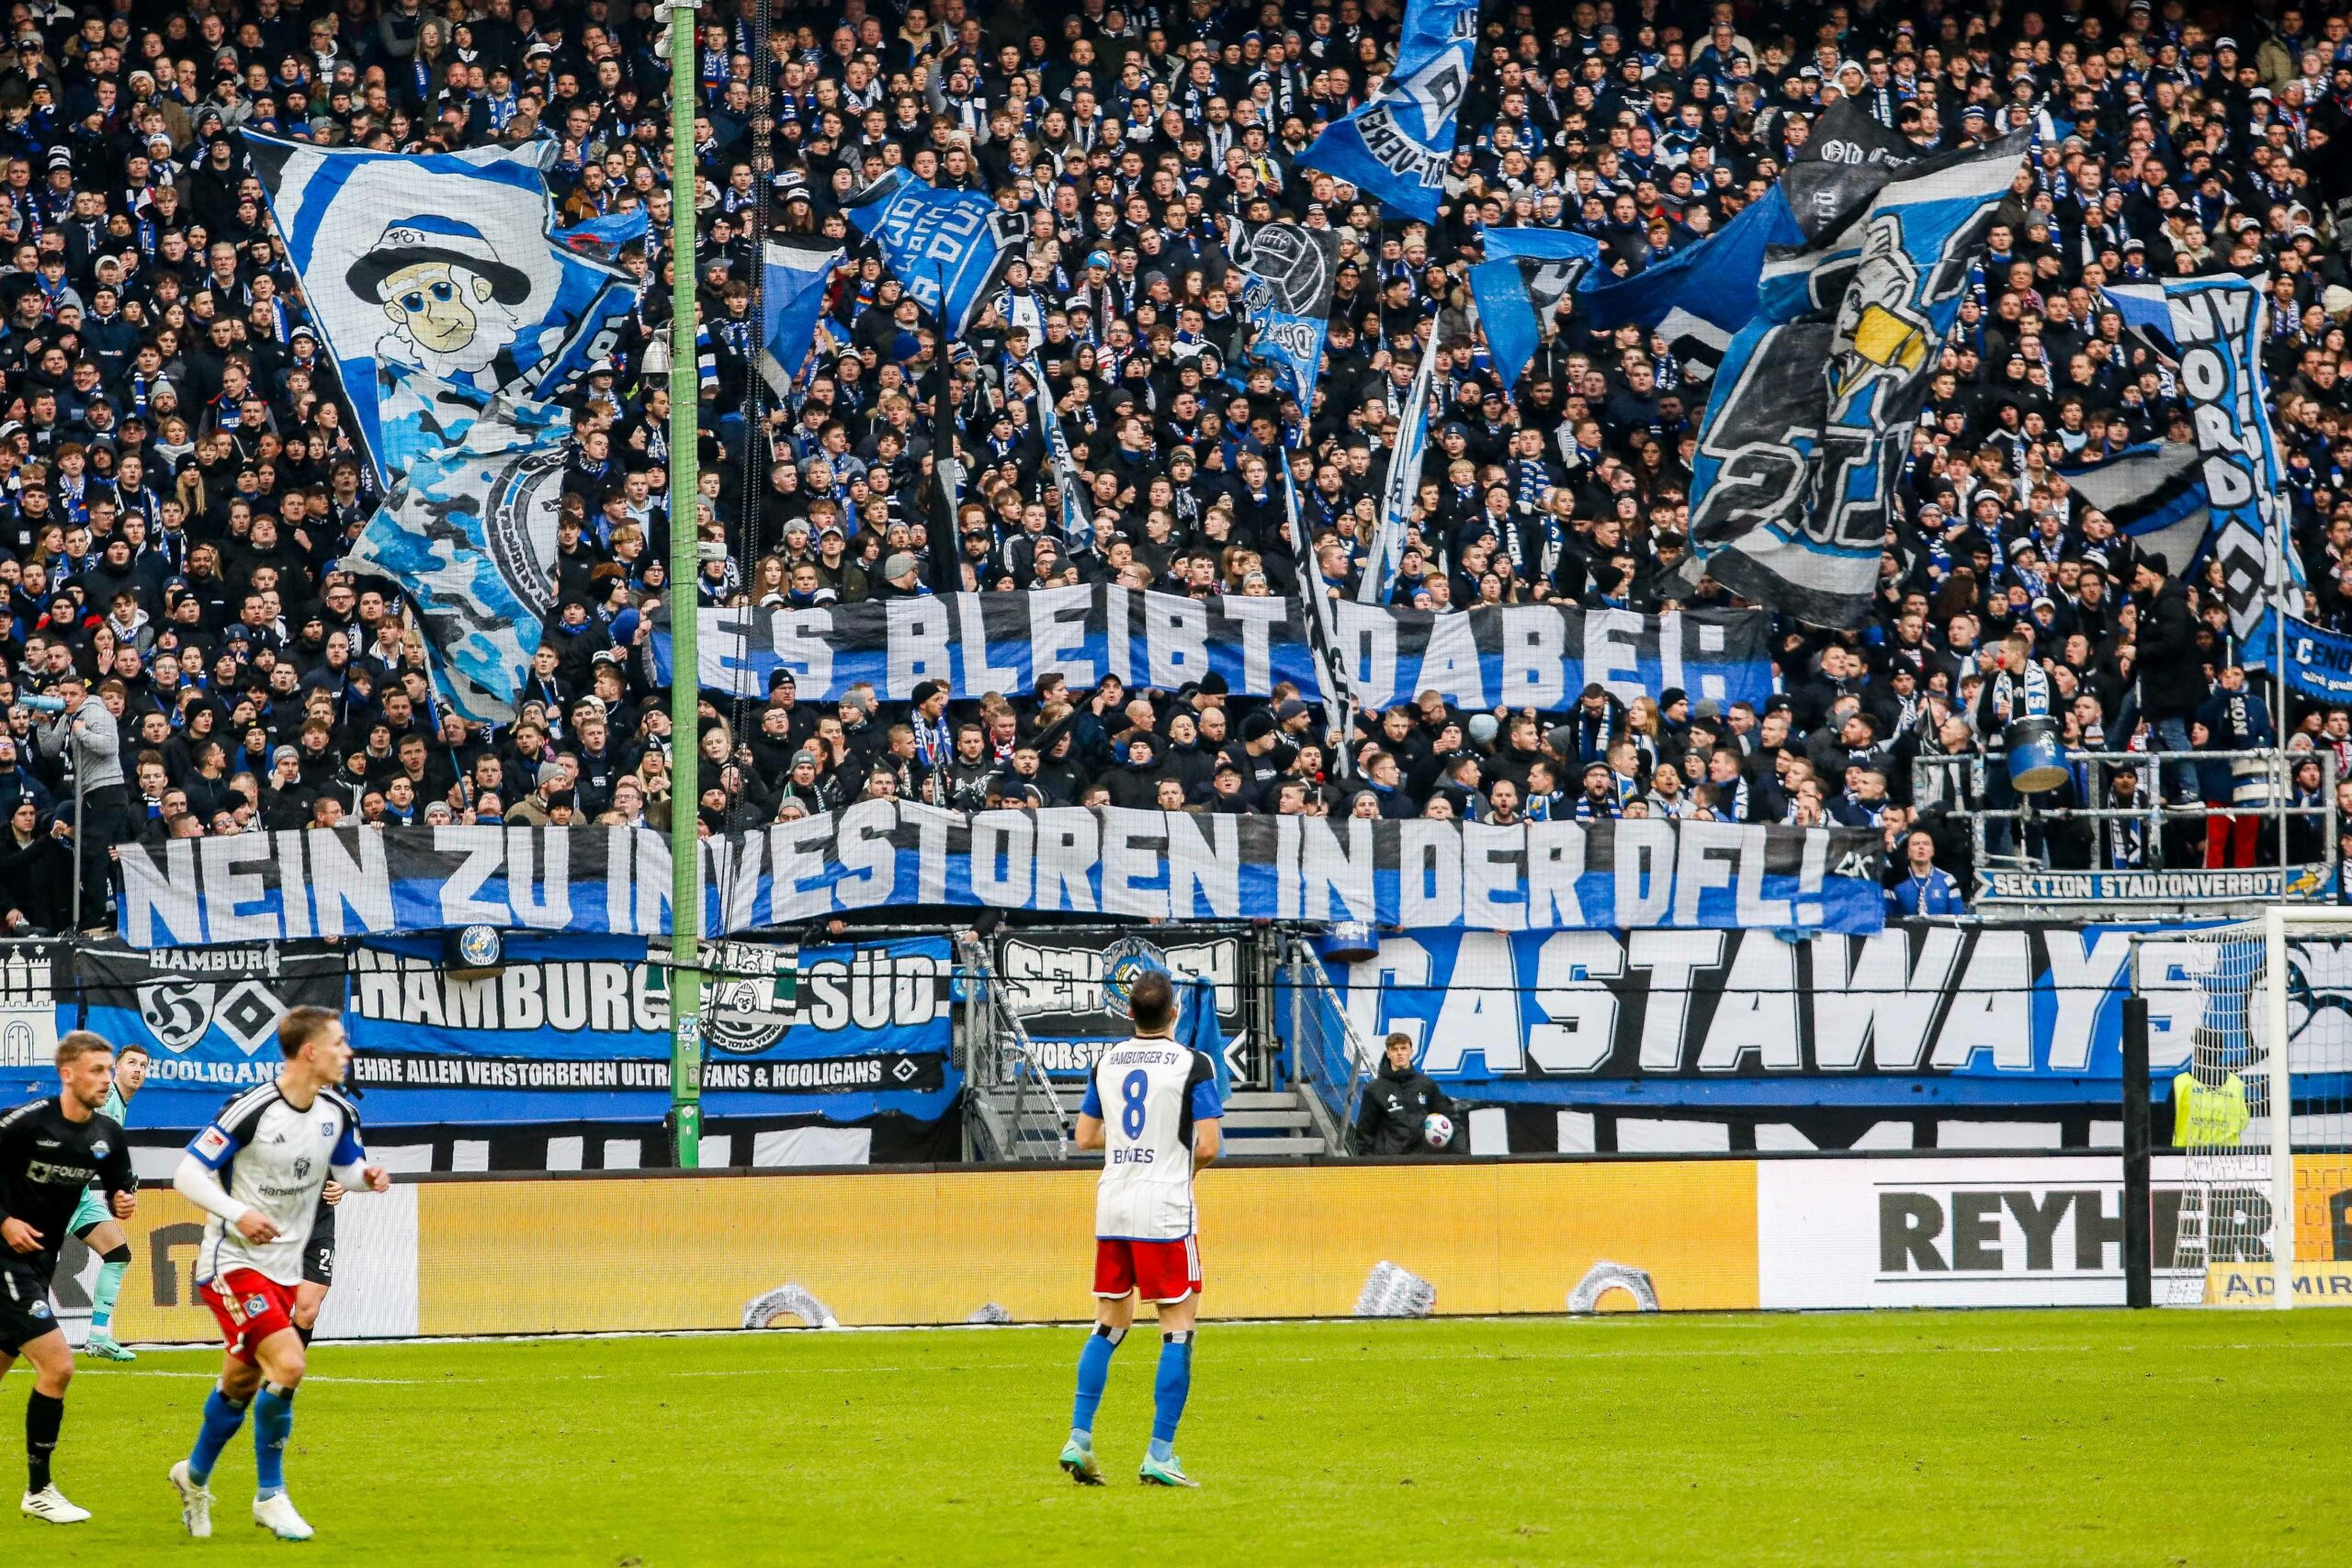 HSV-Fans zeigen ein Banner, auf dem gegen den Investoren-Deal der DFL protestiert wird.